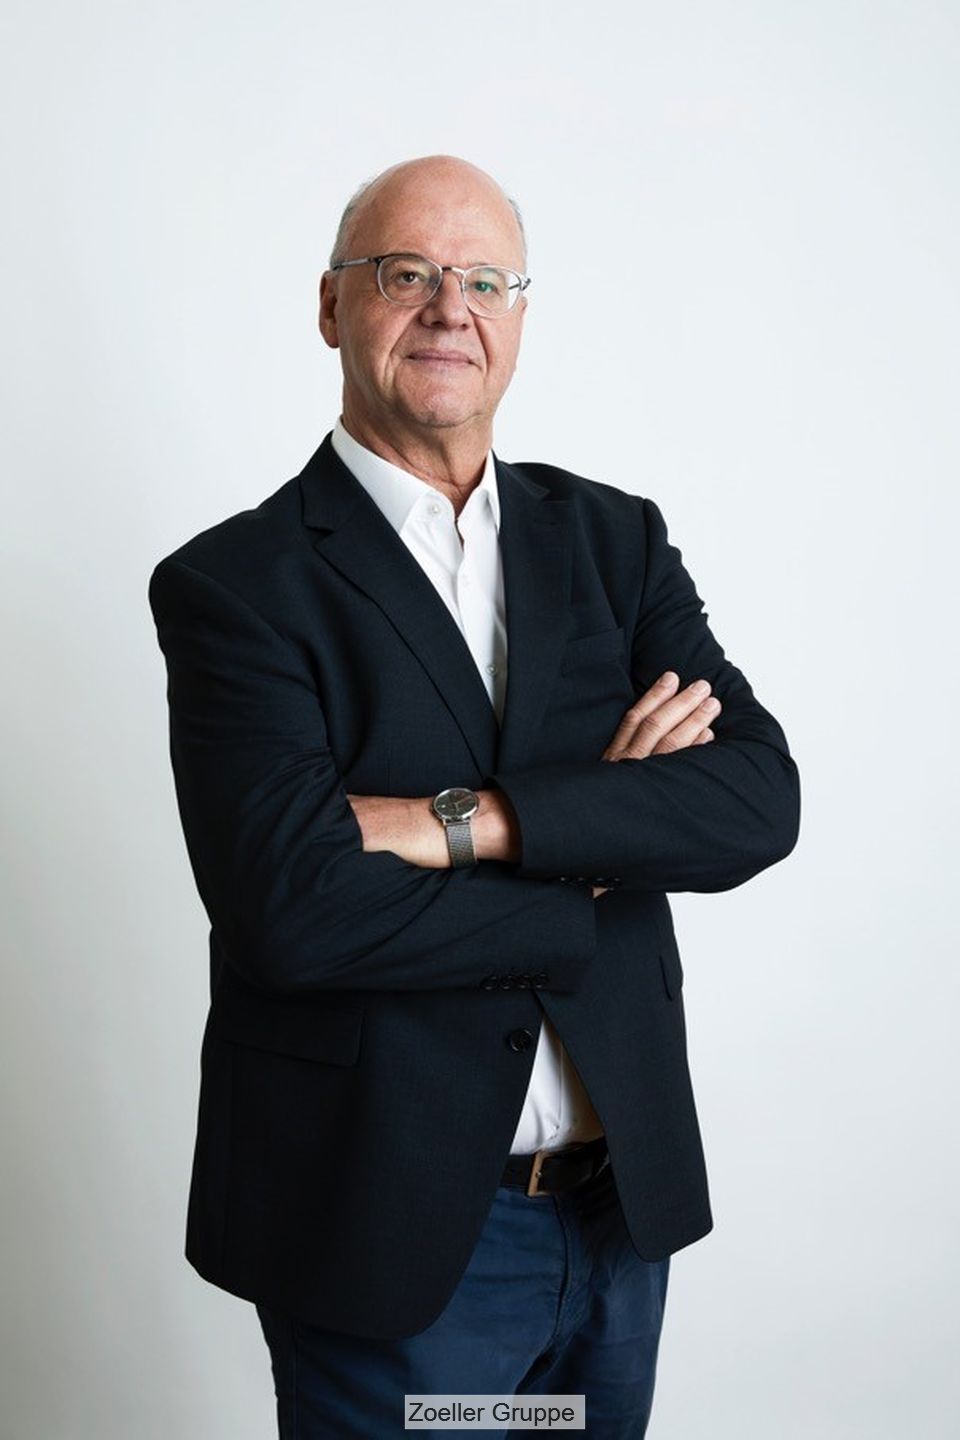 Thomas Schmitz, Zoeller group's CEO